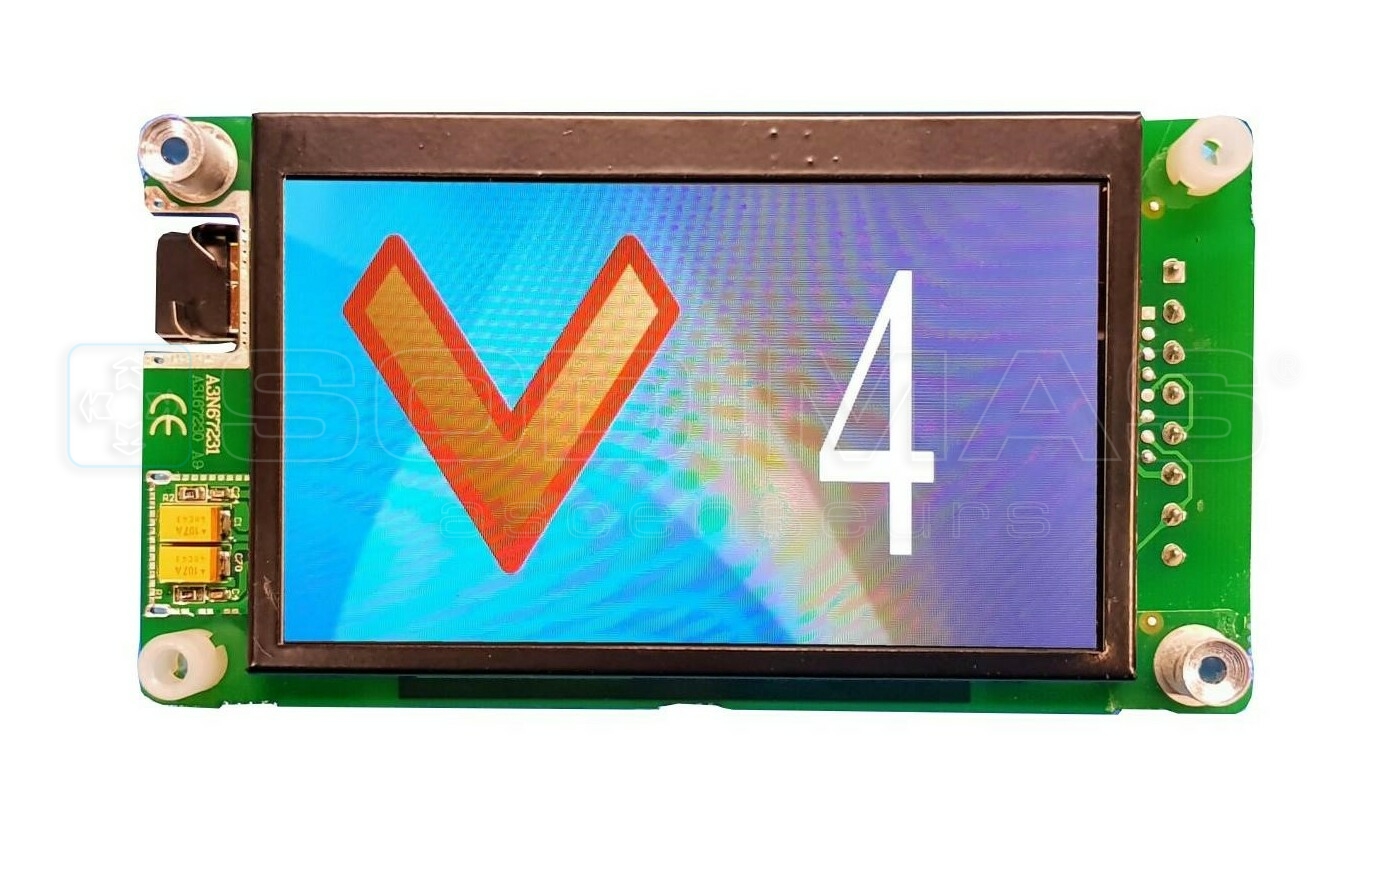 Afficheur LCD 4.3 pouces couleur SAF